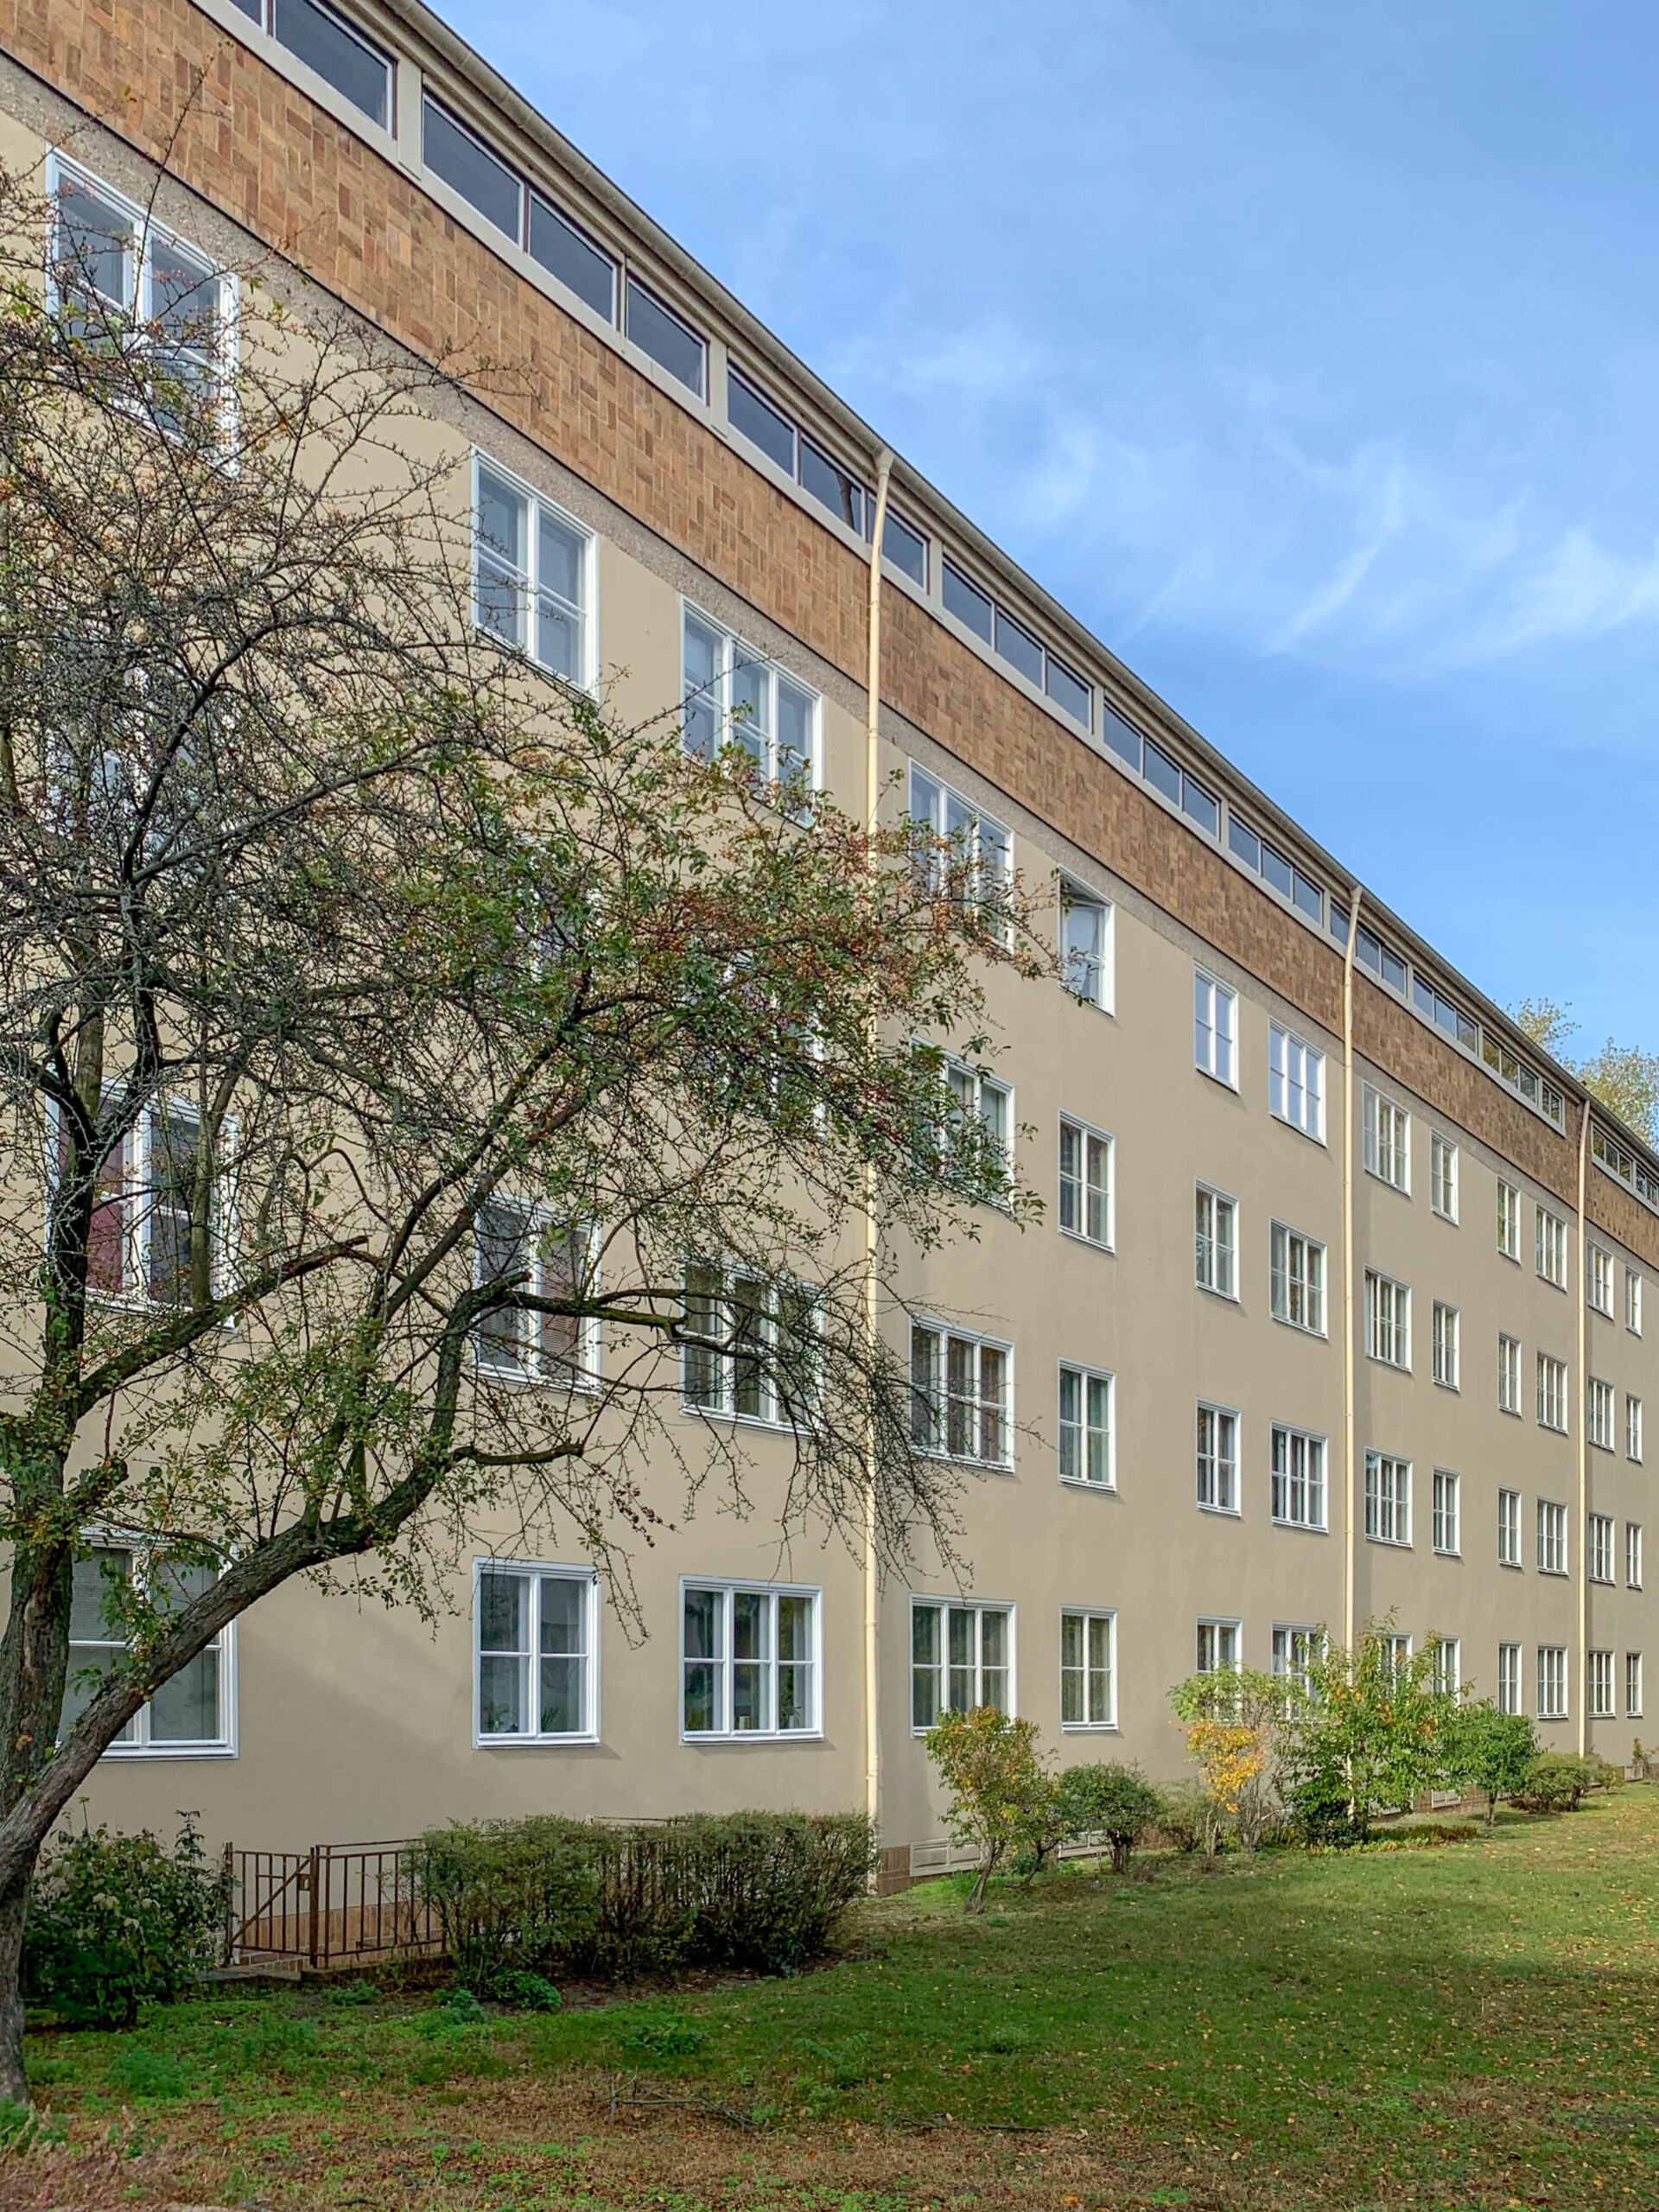 Residential complex, Siemensstadt, 1929-1931. Architect: Hugo Häring